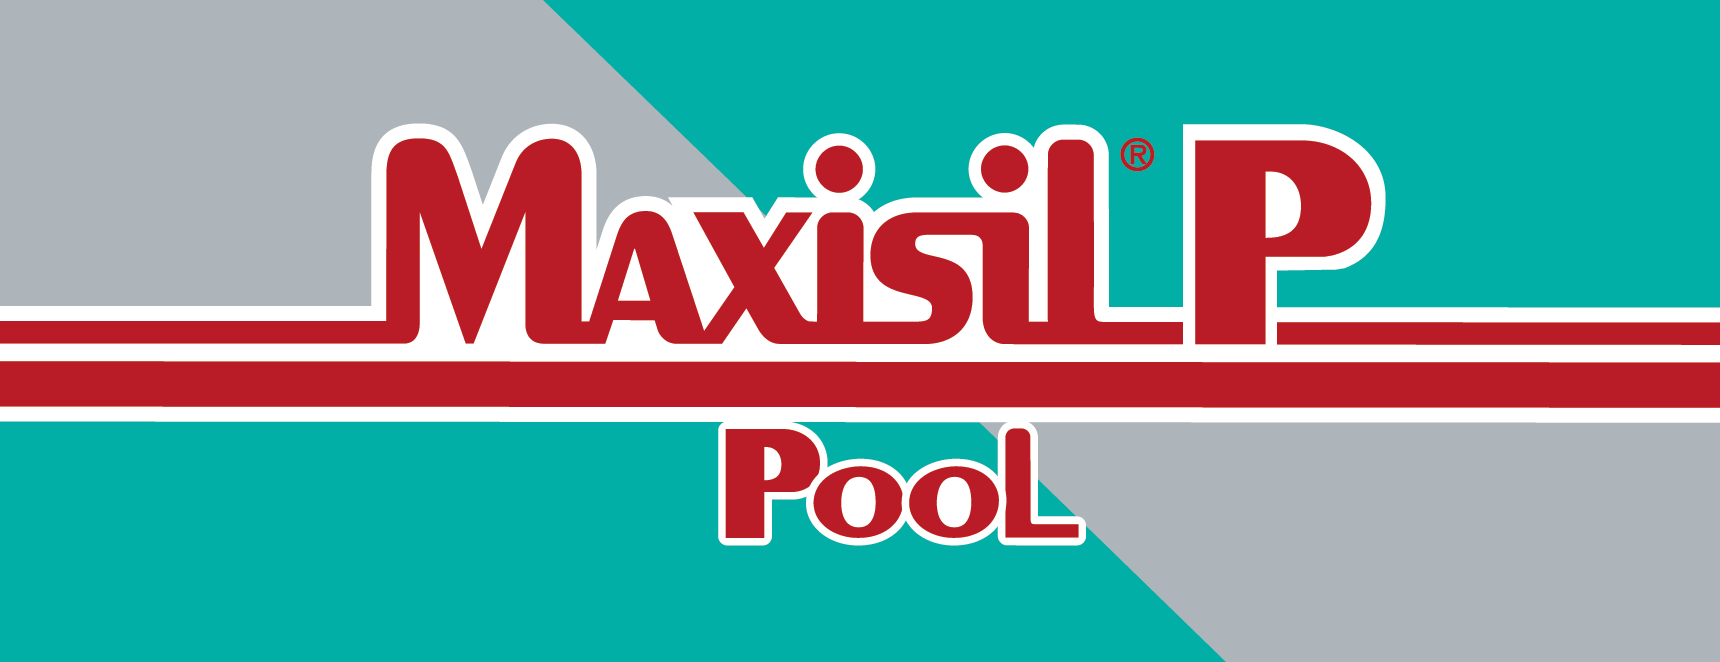 Maxisil P Pool silicone sealant